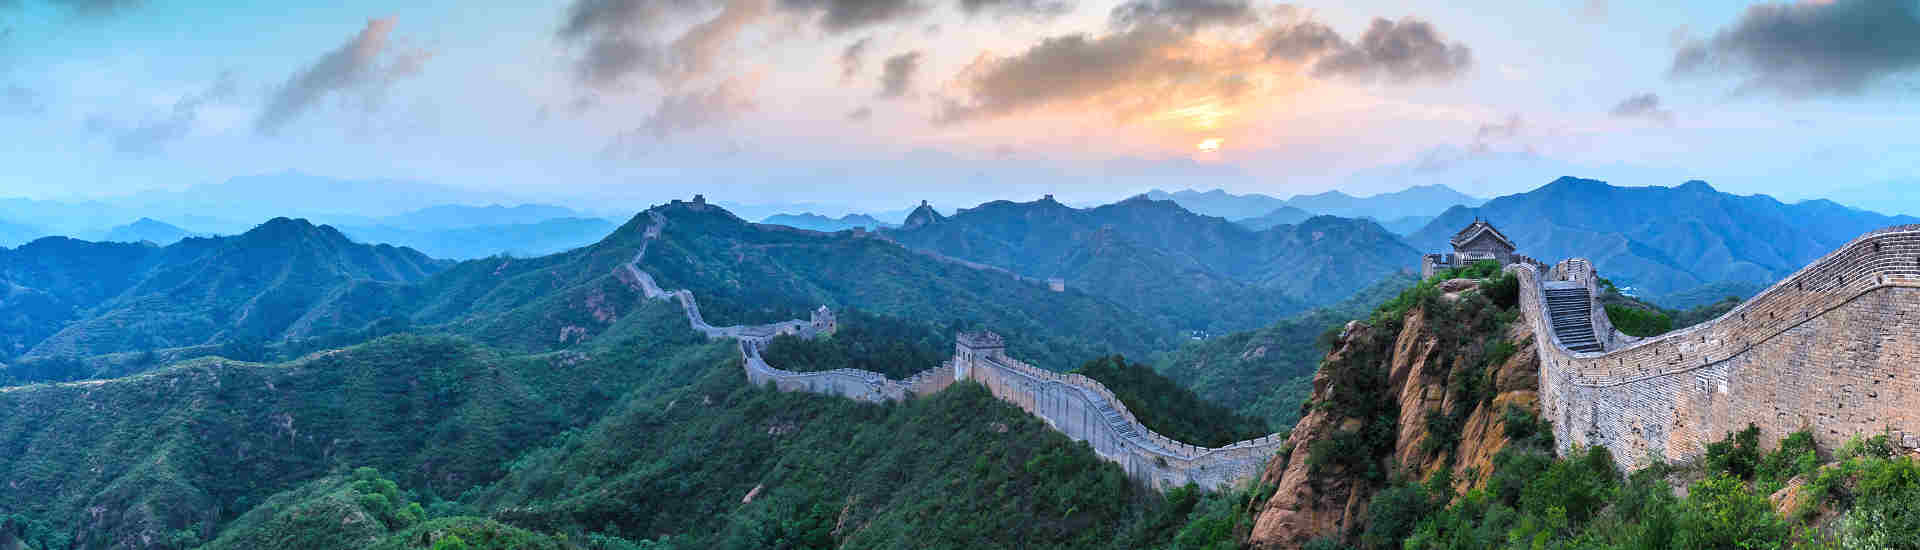 Beeindruckende Ansicht der Großen Mauer Chinas, einer ikonischen Sehenswürdigkeit für Abenteuerlustige und Geschichtsinteressierte